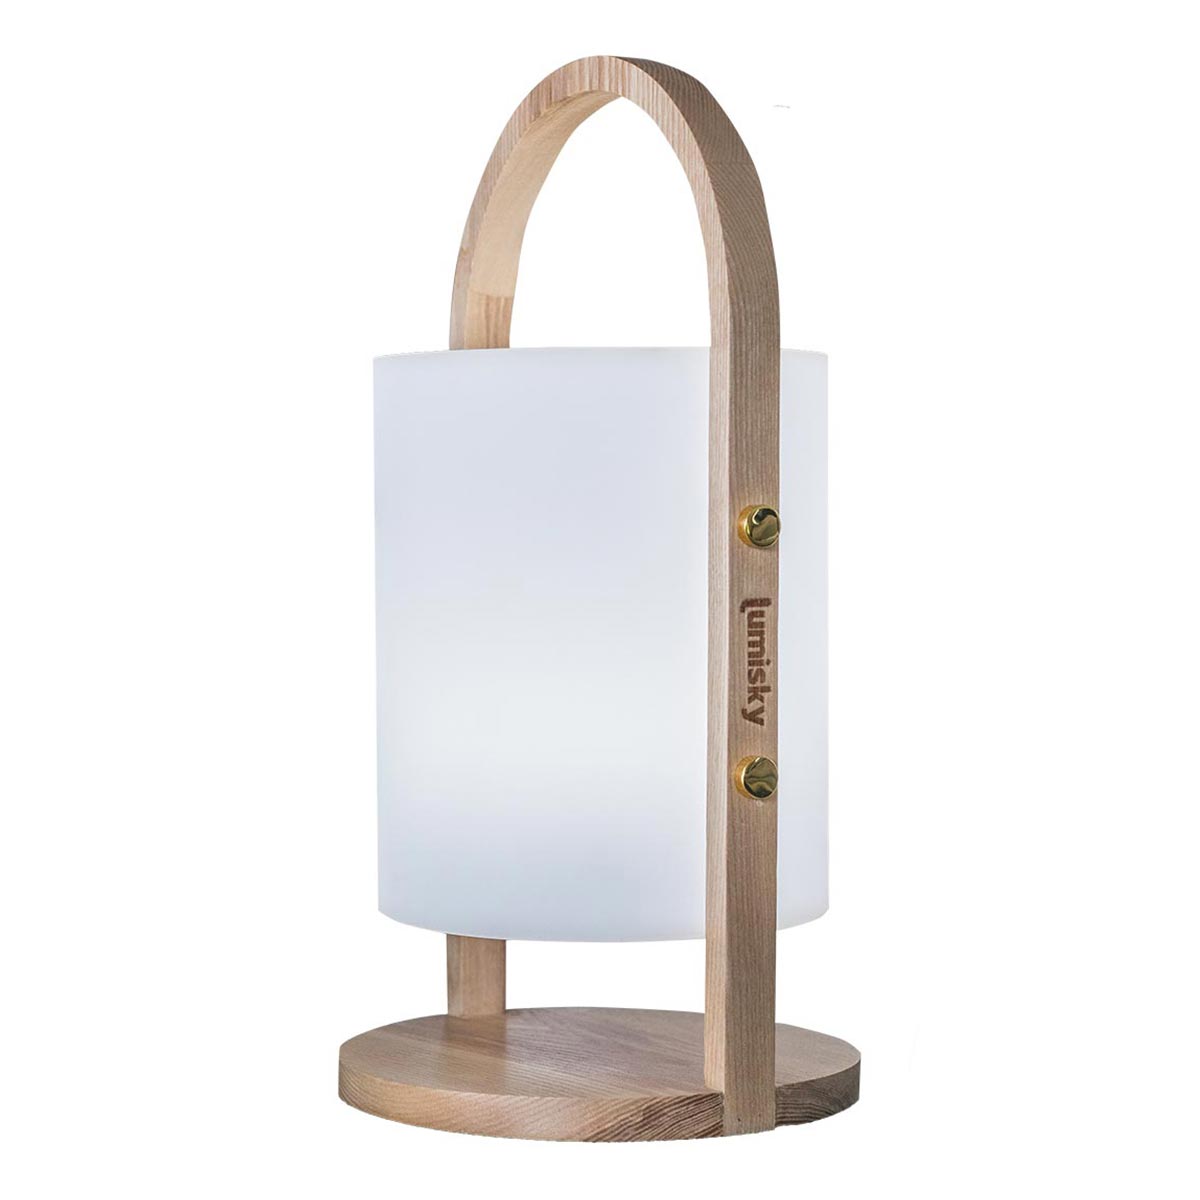 Lanterne sans fil design scandinave poignée bois naturel LED blanc chaud/blanc dimmable WOODY H37cm - REDDECO.com